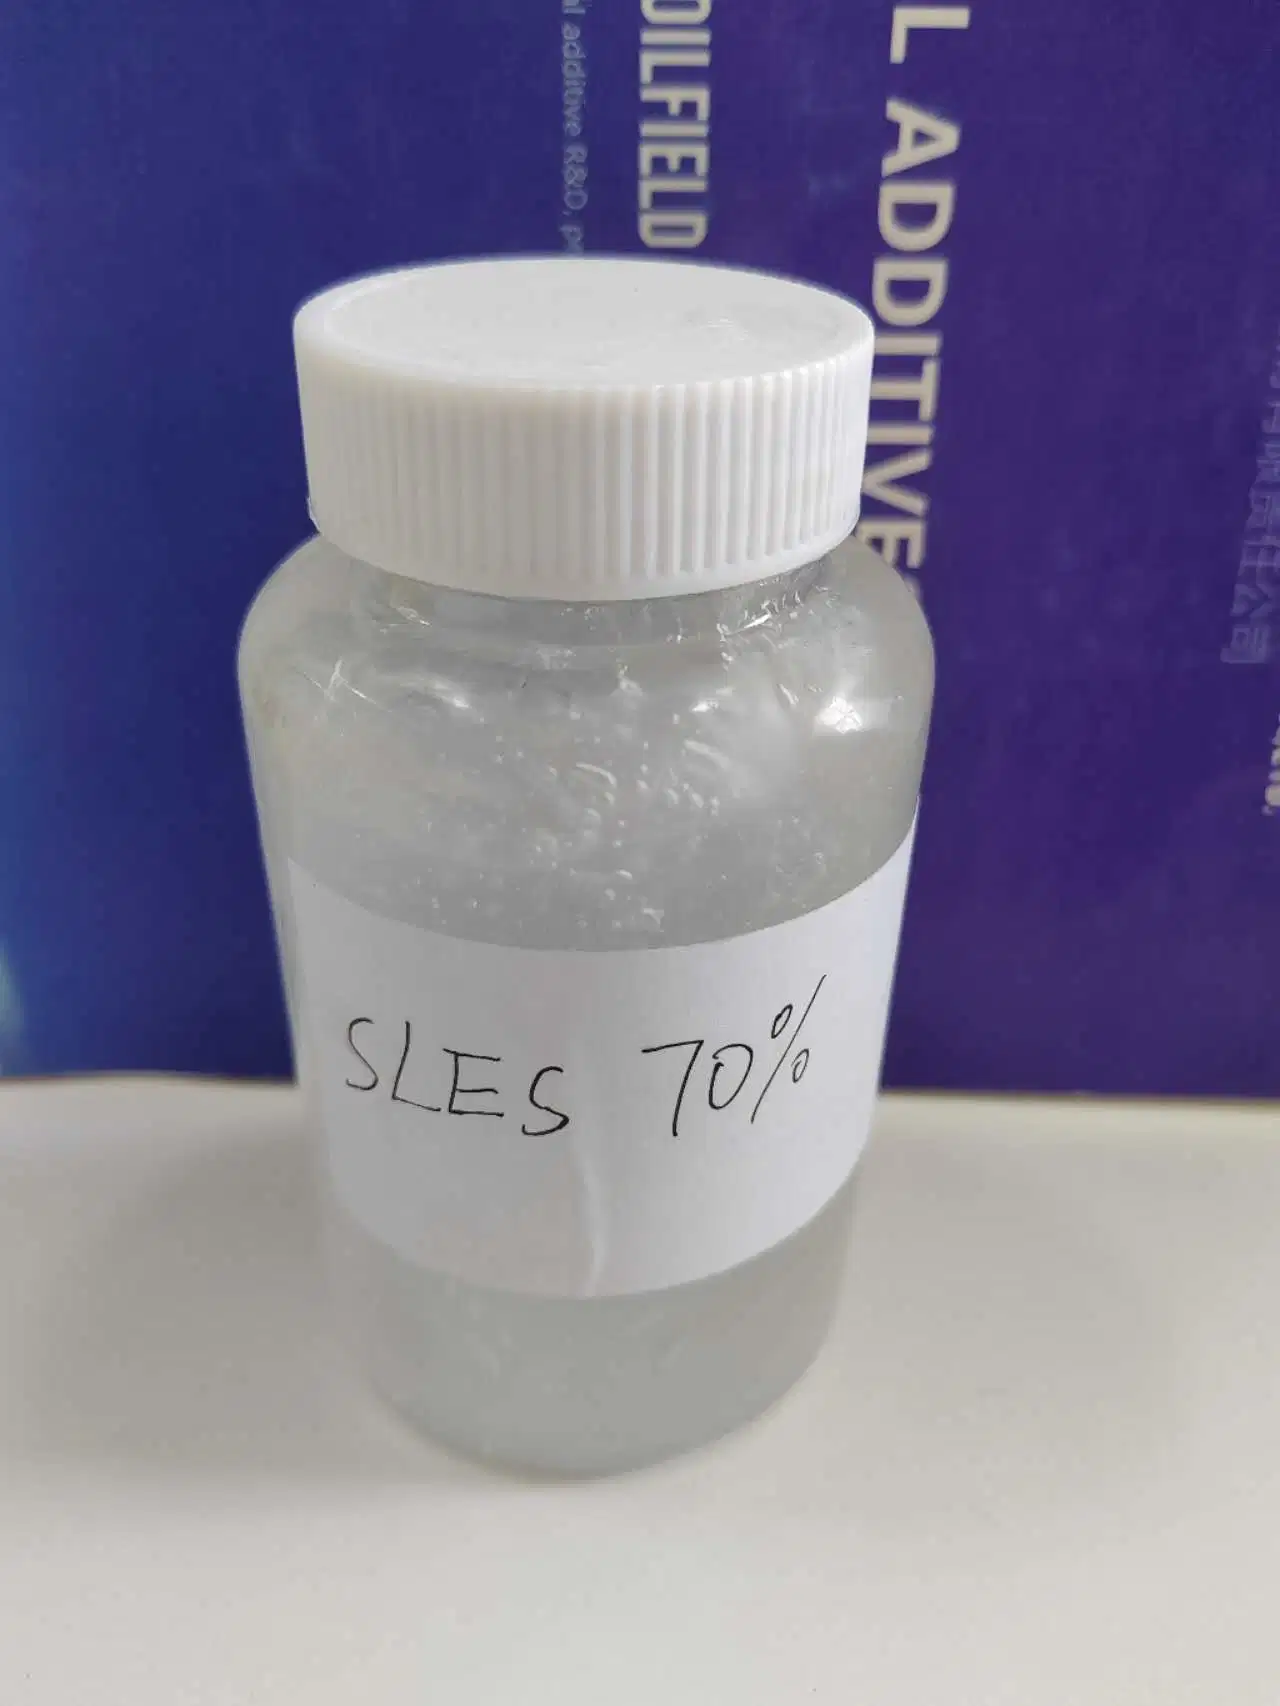 SLES 70% من كبريتات الأثير الصوديوم lauryl Ehithin للمنظف المحكم